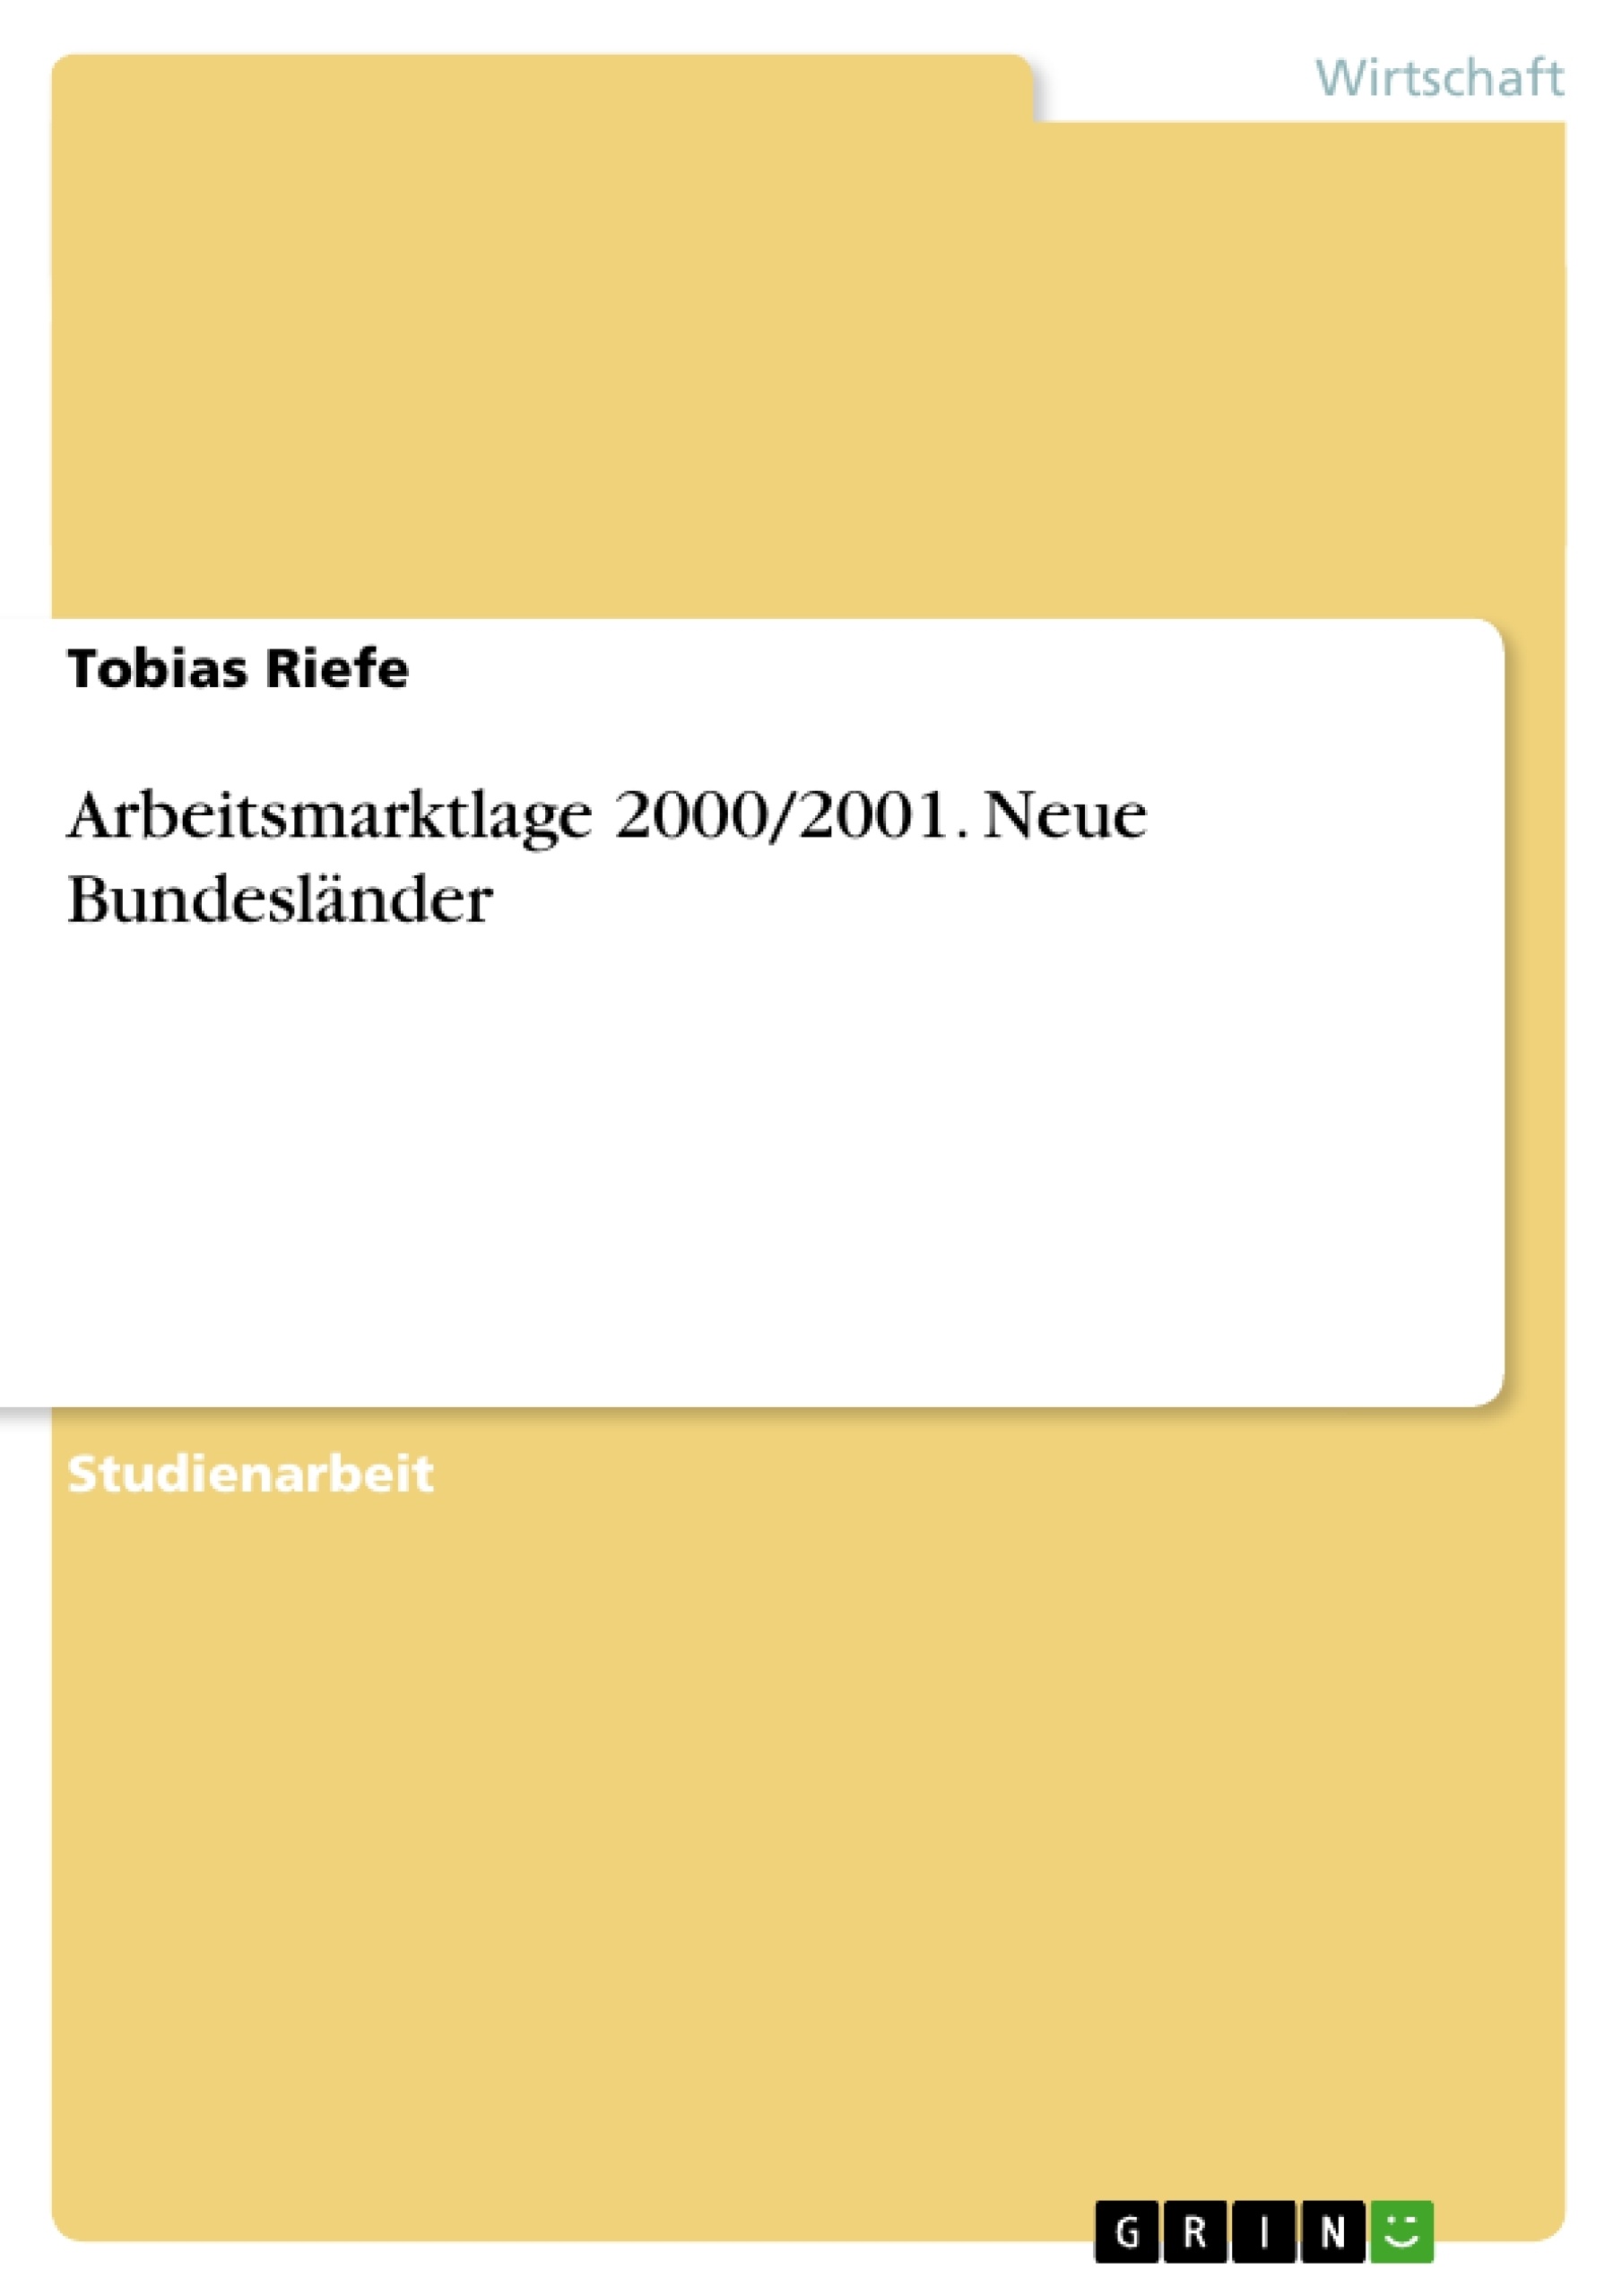 Título: Arbeitsmarktlage 2000/2001. Neue Bundesländer